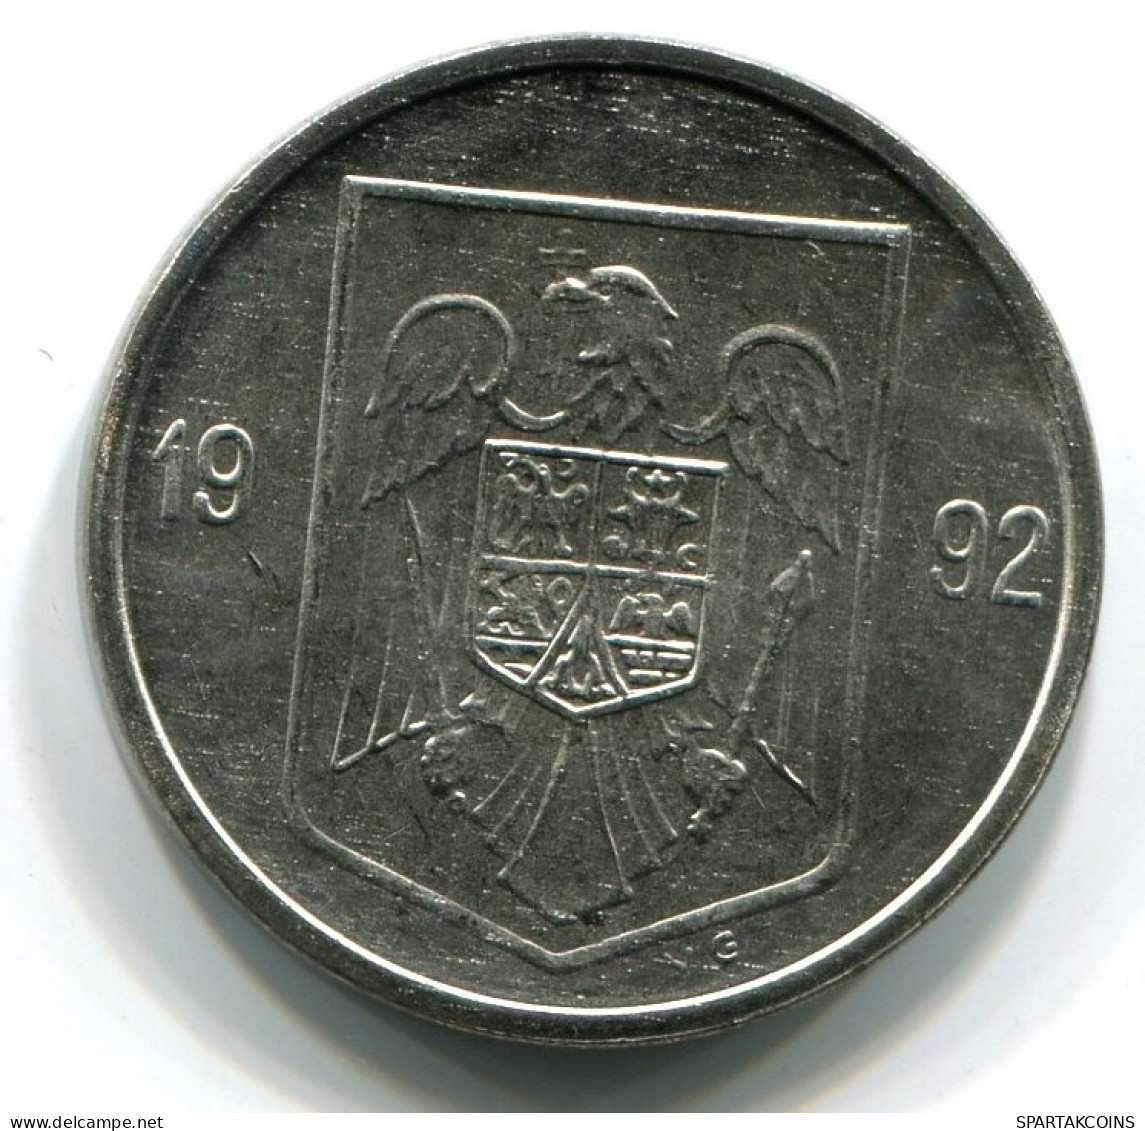 5 LEI 1992 ROMÁN OMANIA UNC Eagle Coat Of Arms V.G Mark Moneda #W11230.E.A - Romania